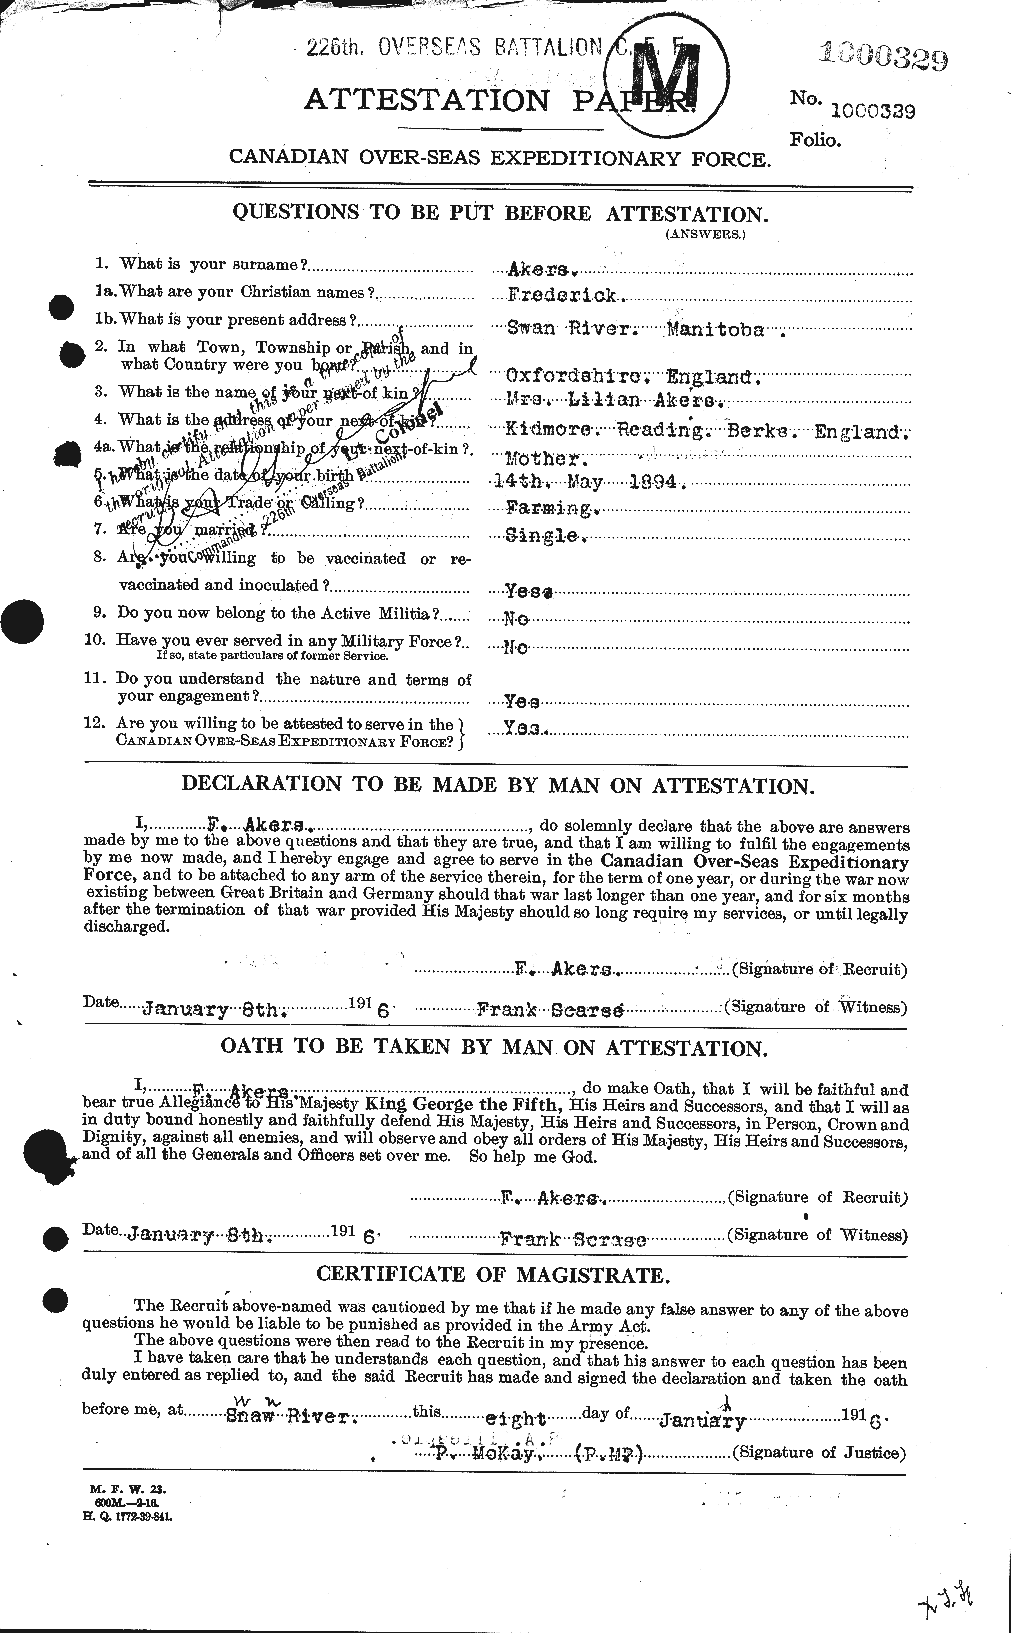 Dossiers du Personnel de la Première Guerre mondiale - CEC 203546a